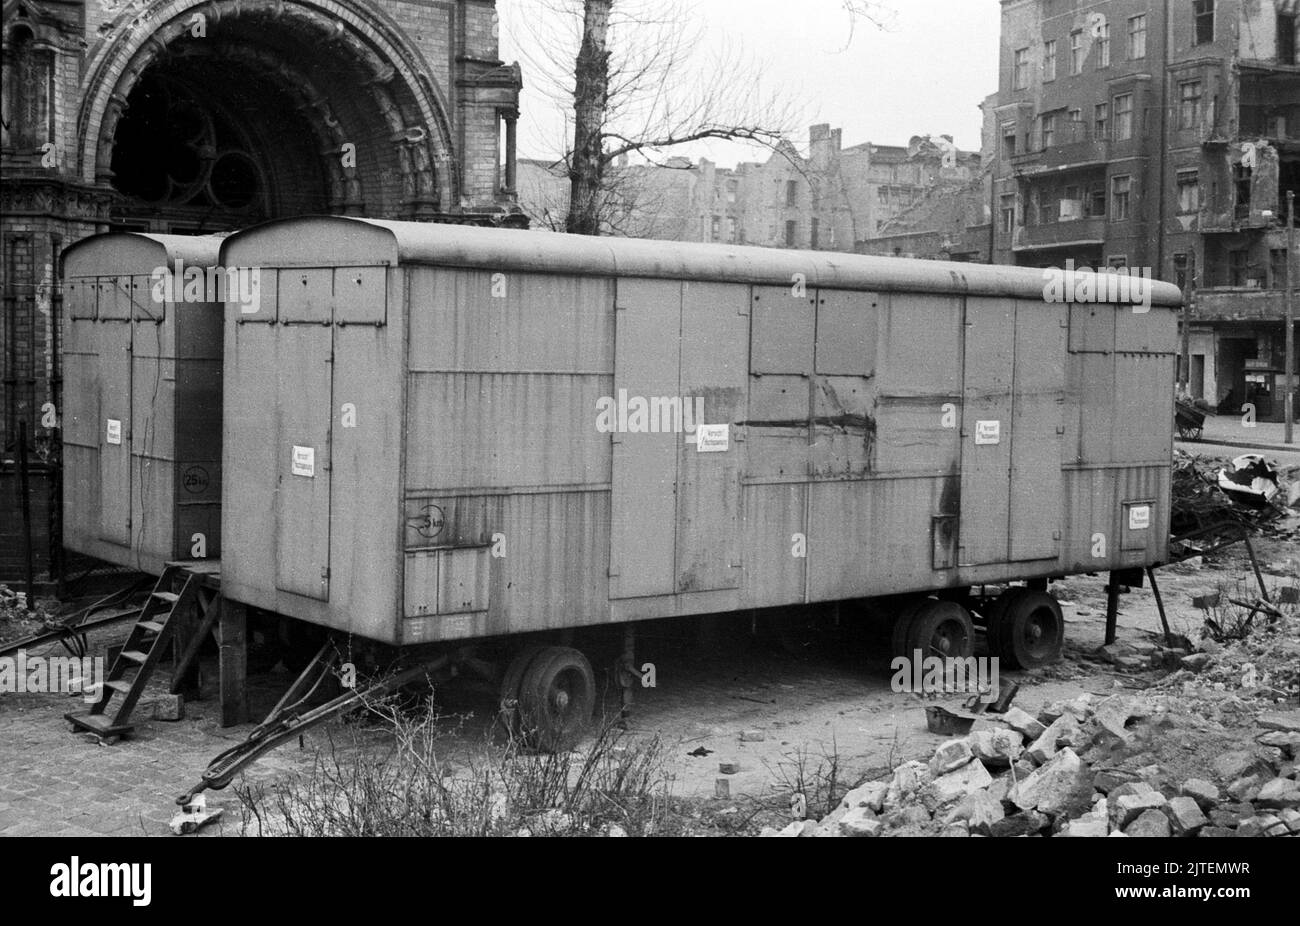 Eine Stromversorgung durch Siemens wird unter anderem in diesen beiden Bauwagen koordiniert und bereitgestellt, Berlin, Deutschland 1947. Stock Photo